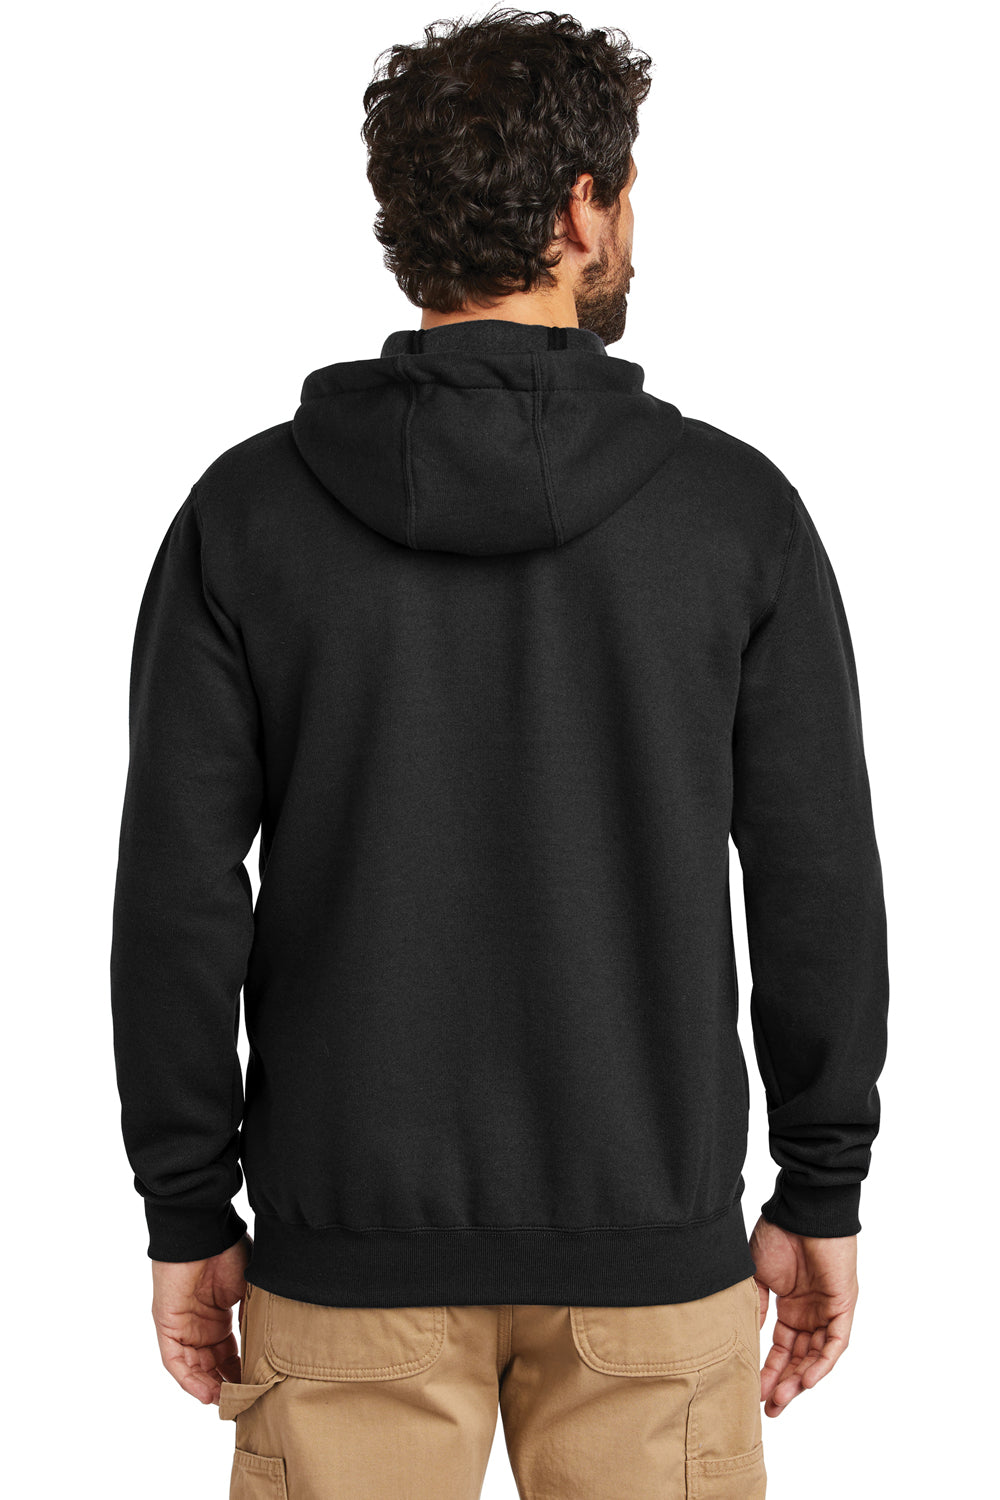 Carhartt CTK122 Mens Full Zip Hooded Sweatshirt Hoodie Black Model Back